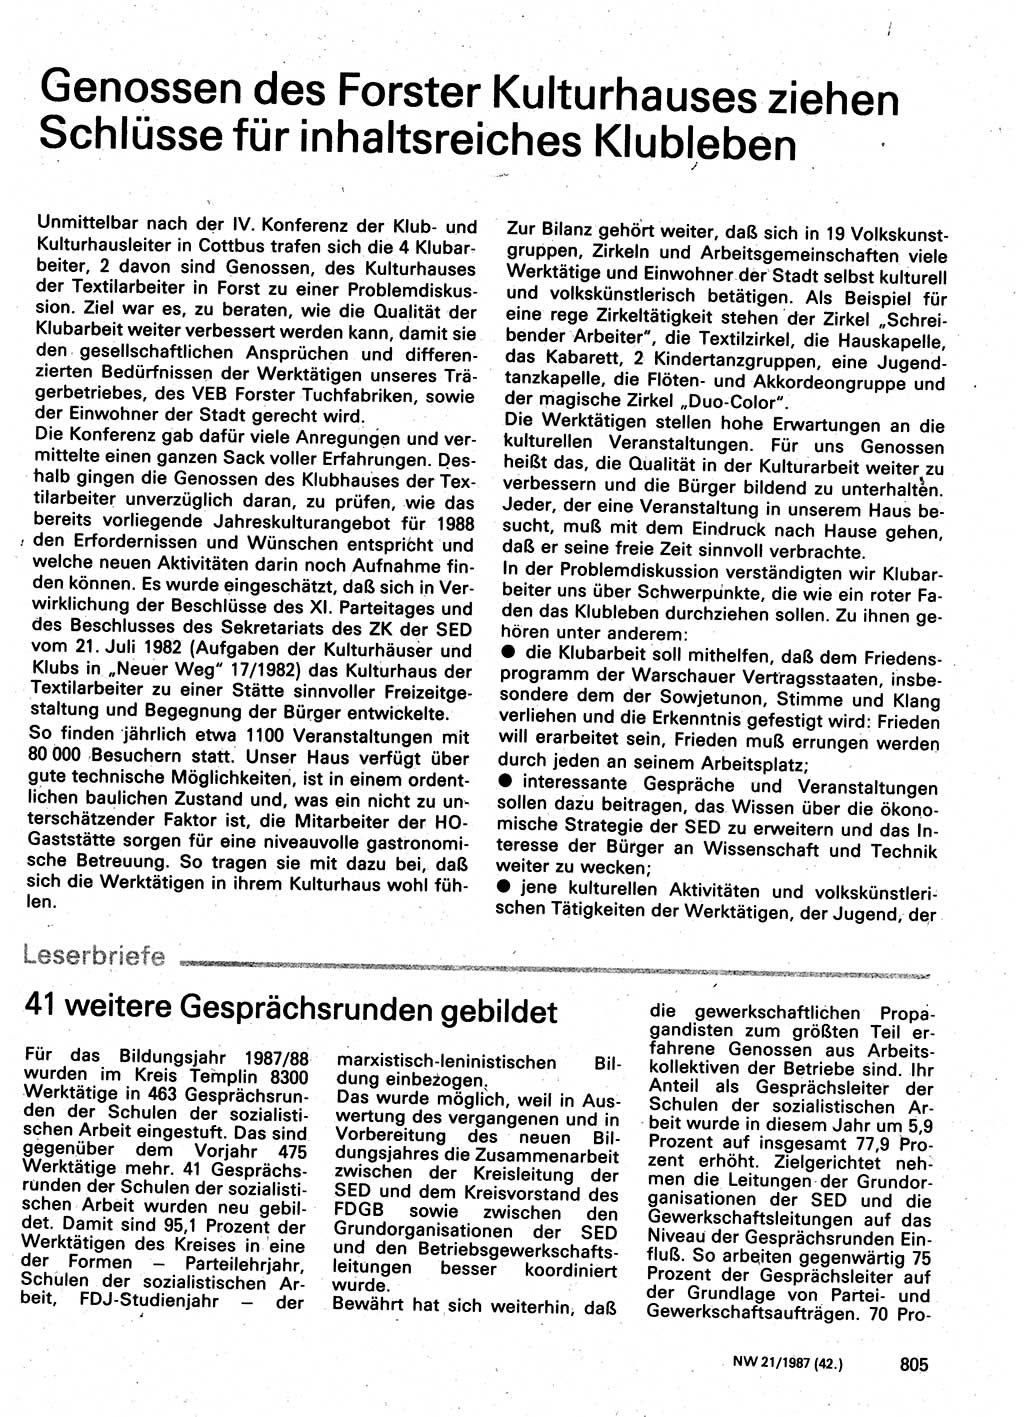 Neuer Weg (NW), Organ des Zentralkomitees (ZK) der SED (Sozialistische Einheitspartei Deutschlands) für Fragen des Parteilebens, 42. Jahrgang [Deutsche Demokratische Republik (DDR)] 1987, Seite 805 (NW ZK SED DDR 1987, S. 805)